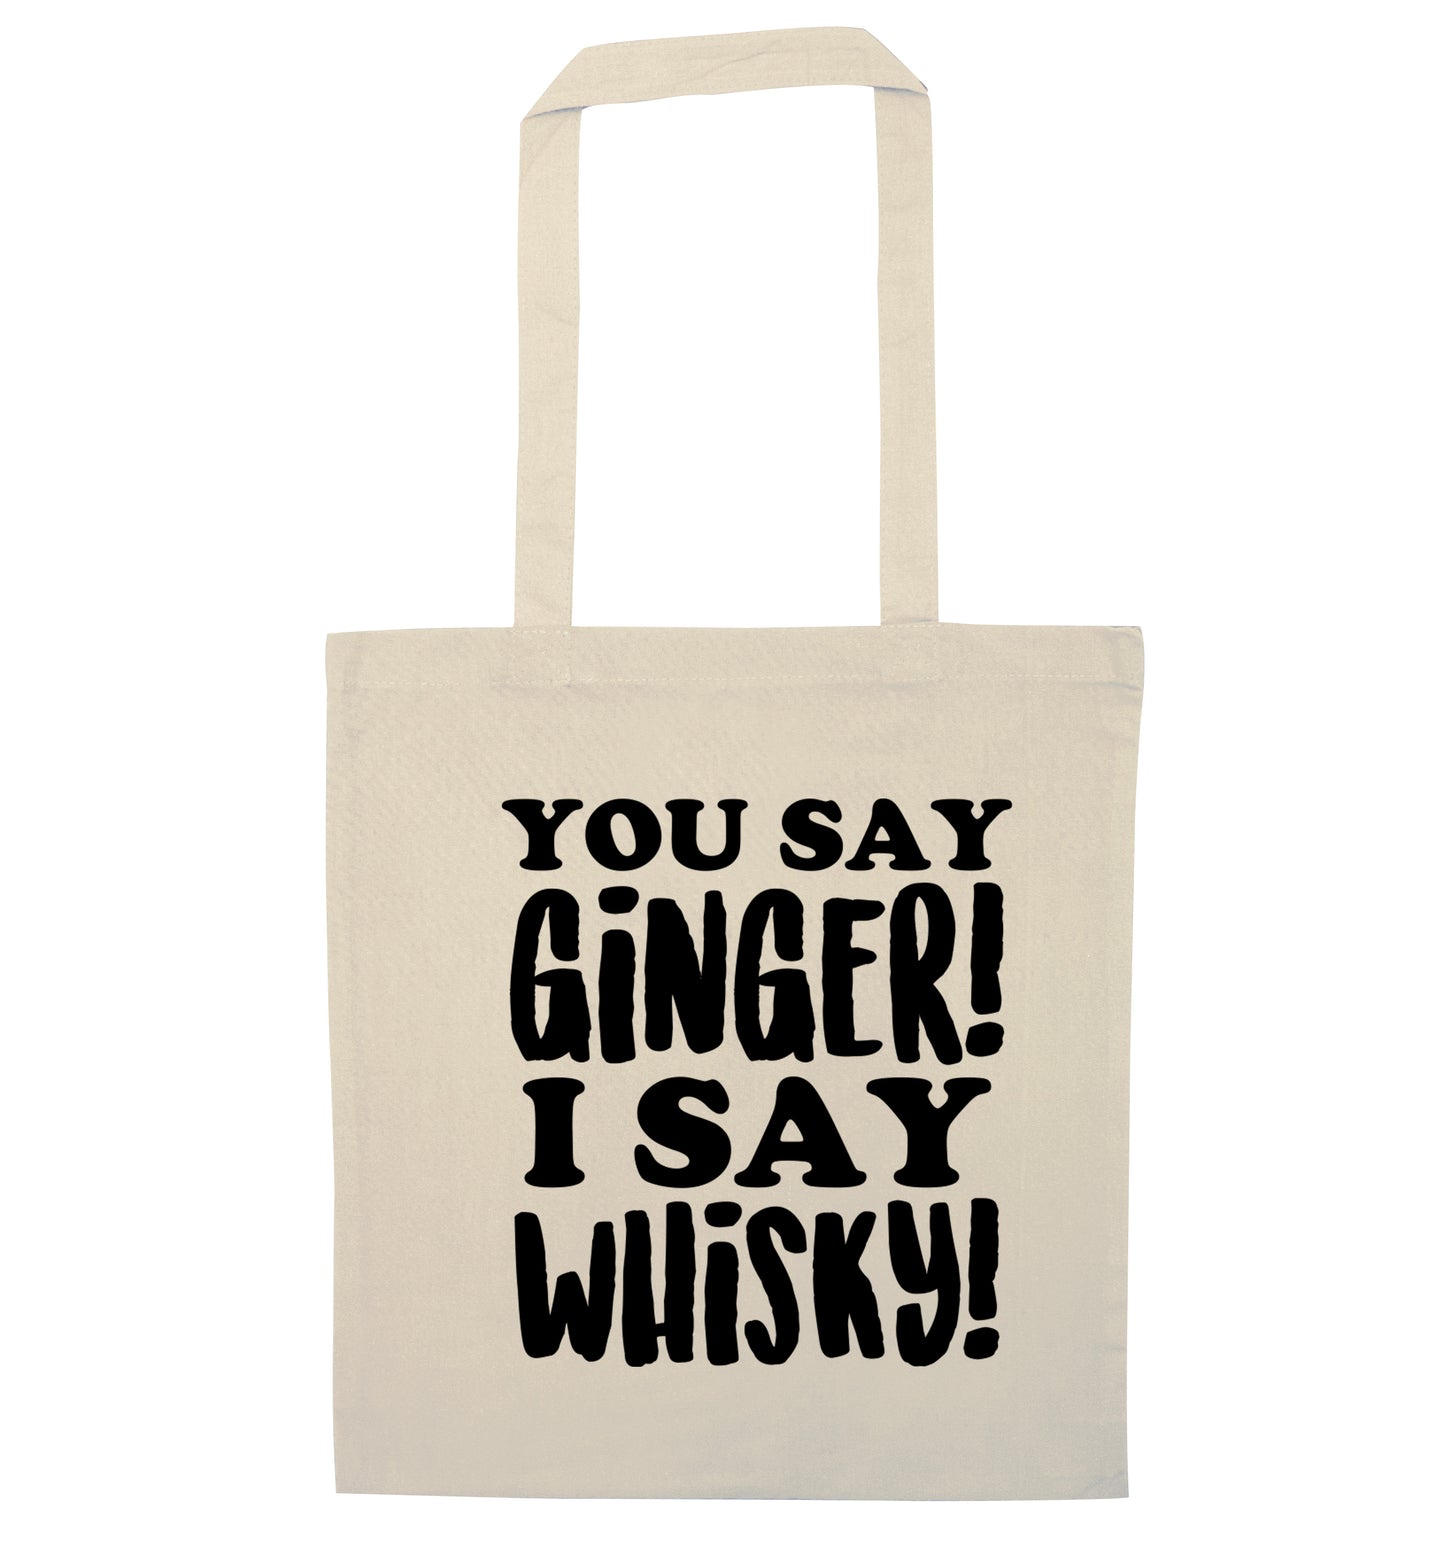 You say ginger I say whisky! natural tote bag